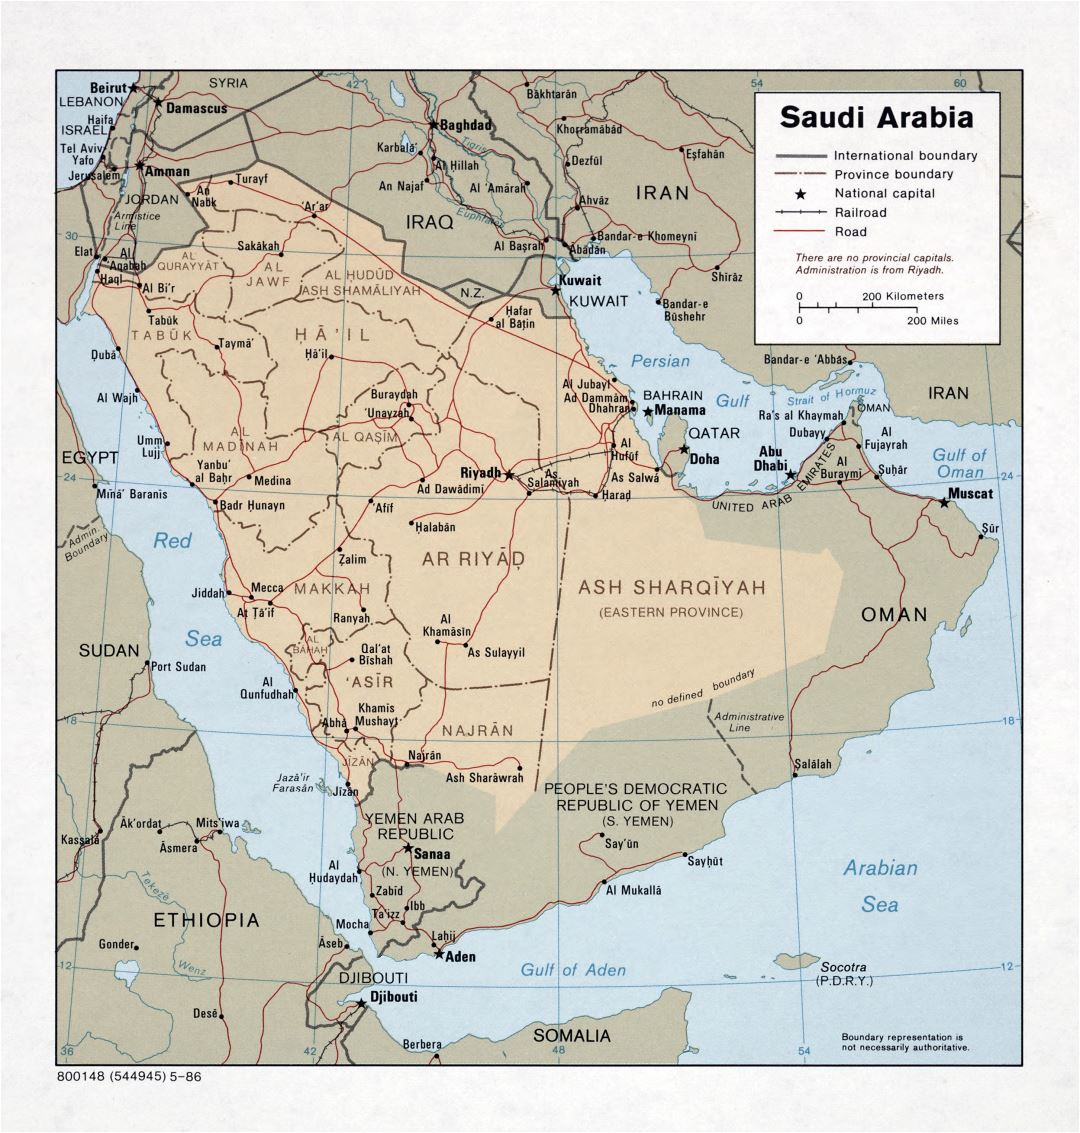 Grande detallado mapa político y administrativo de Arabia Saudita con carreteras, ferrocarriles y principales ciudades - 1986